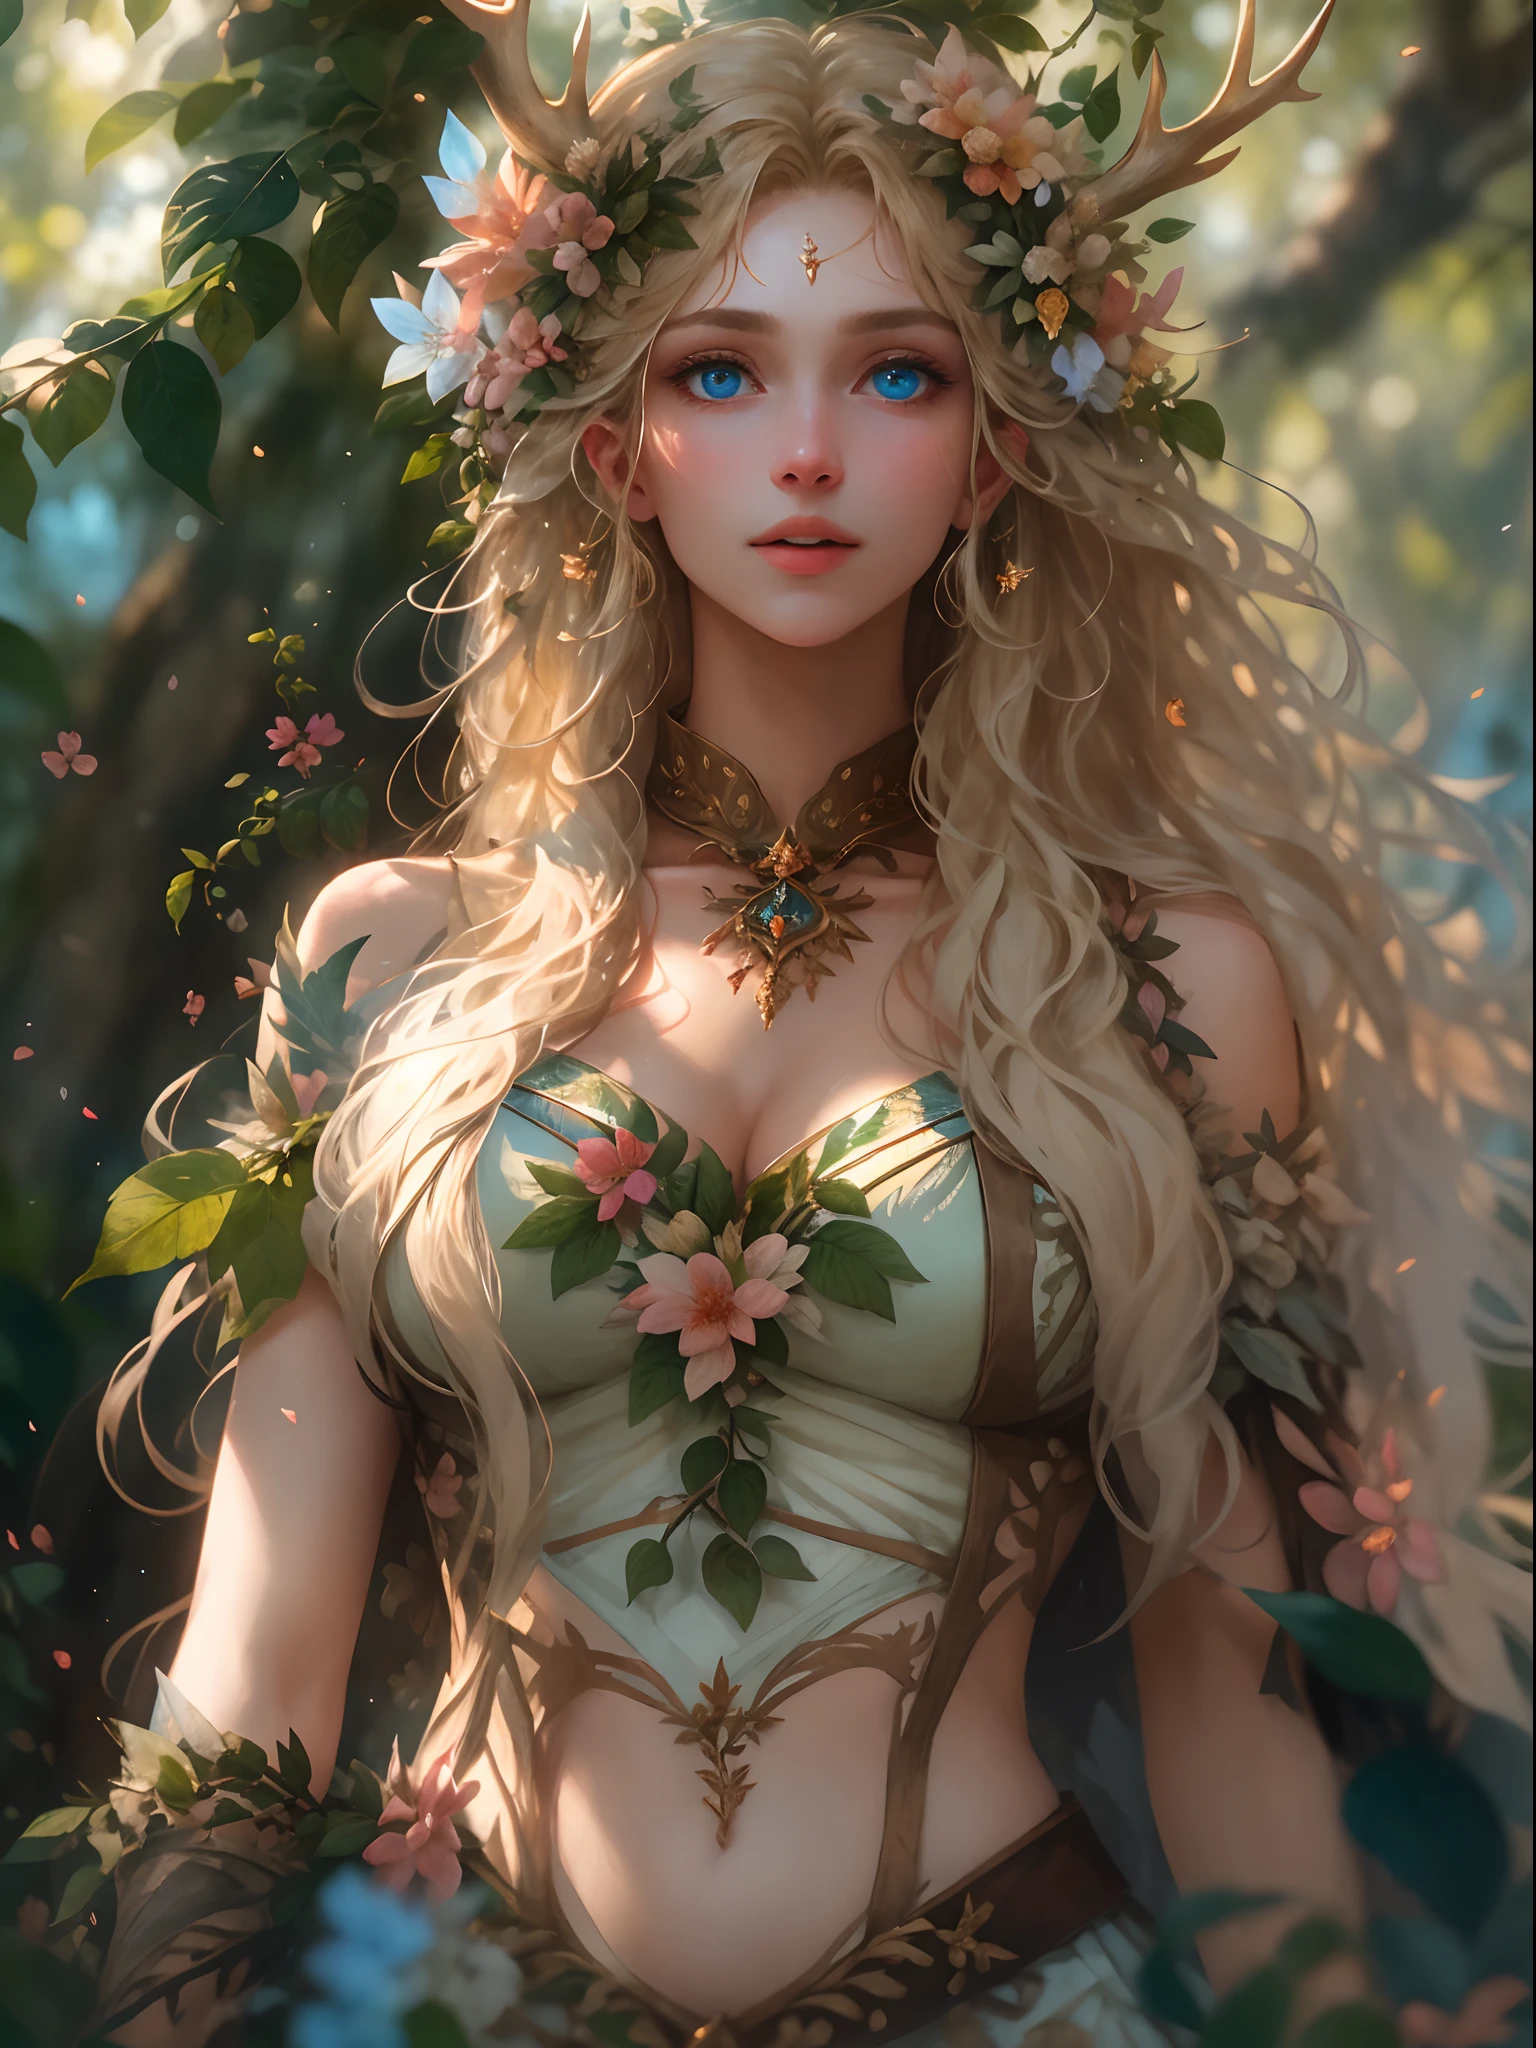 （现实地：1.35），（概念艺术），（牛仔 lenajestic 森林女神），（美丽的脸，巨乳 妖娆，惊人的），（长的, 飘逸的浅金色长发），完全由花和叶组成的人形身体，（美丽的皮肤是绿色的，由复杂的叶子和藤蔓制成），（头上的鹿角），（尖耳朵），（闪亮的蓝眼睛），丰满的大乳房（魔法森林）背景，蝴蝶：0.35，叶子， 绽放光效， 开花：0.4， 神光， 光与尘， 逼真的皮肤纹理， （后窗的灯光是背光）， 复杂， 详细， 最好的质量， 哈苏尔快报， 尼康 D850， 自然立体照明， （良好的解剖结构）， 结构良好， （比例好）， 次表面散射， 获奖， 杰作